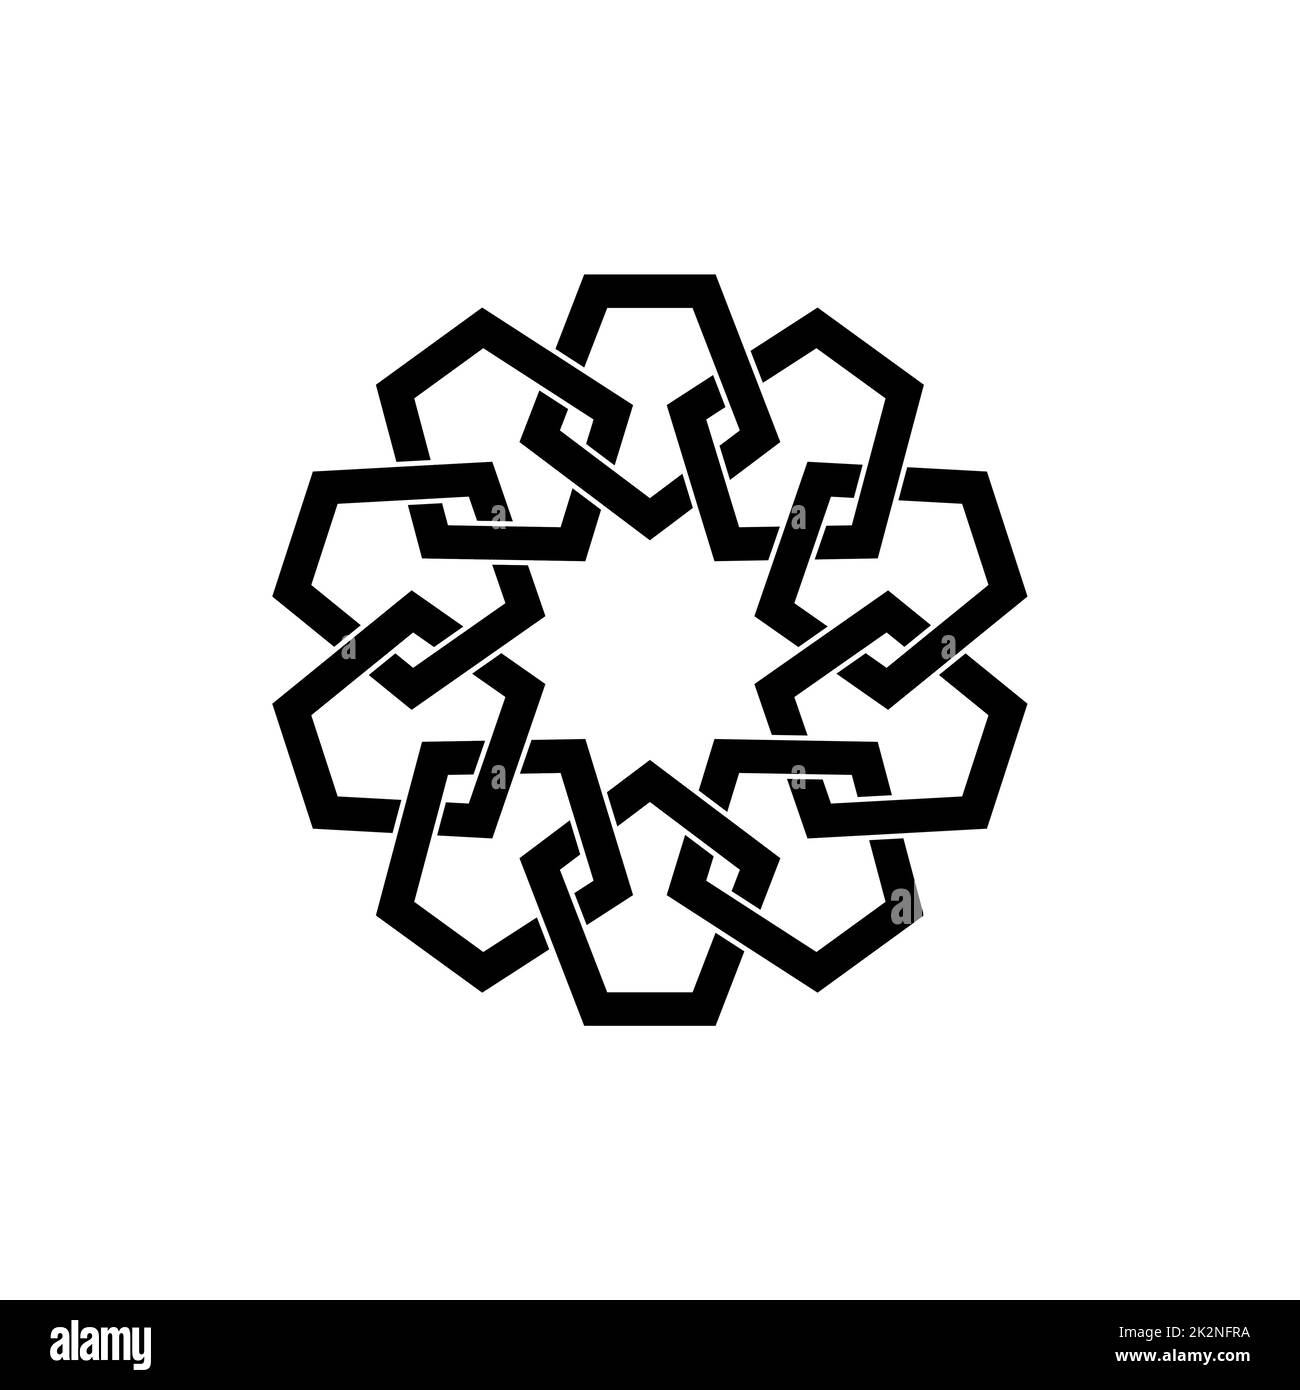 Geometrisches Emblem-Template-Design mit überlappenden Elementen. Islamisches Motiv. Geometrisches Muster Mandala im arabischen Stil, schwarzes Logo isoliert auf einem weißen Stock Vektor